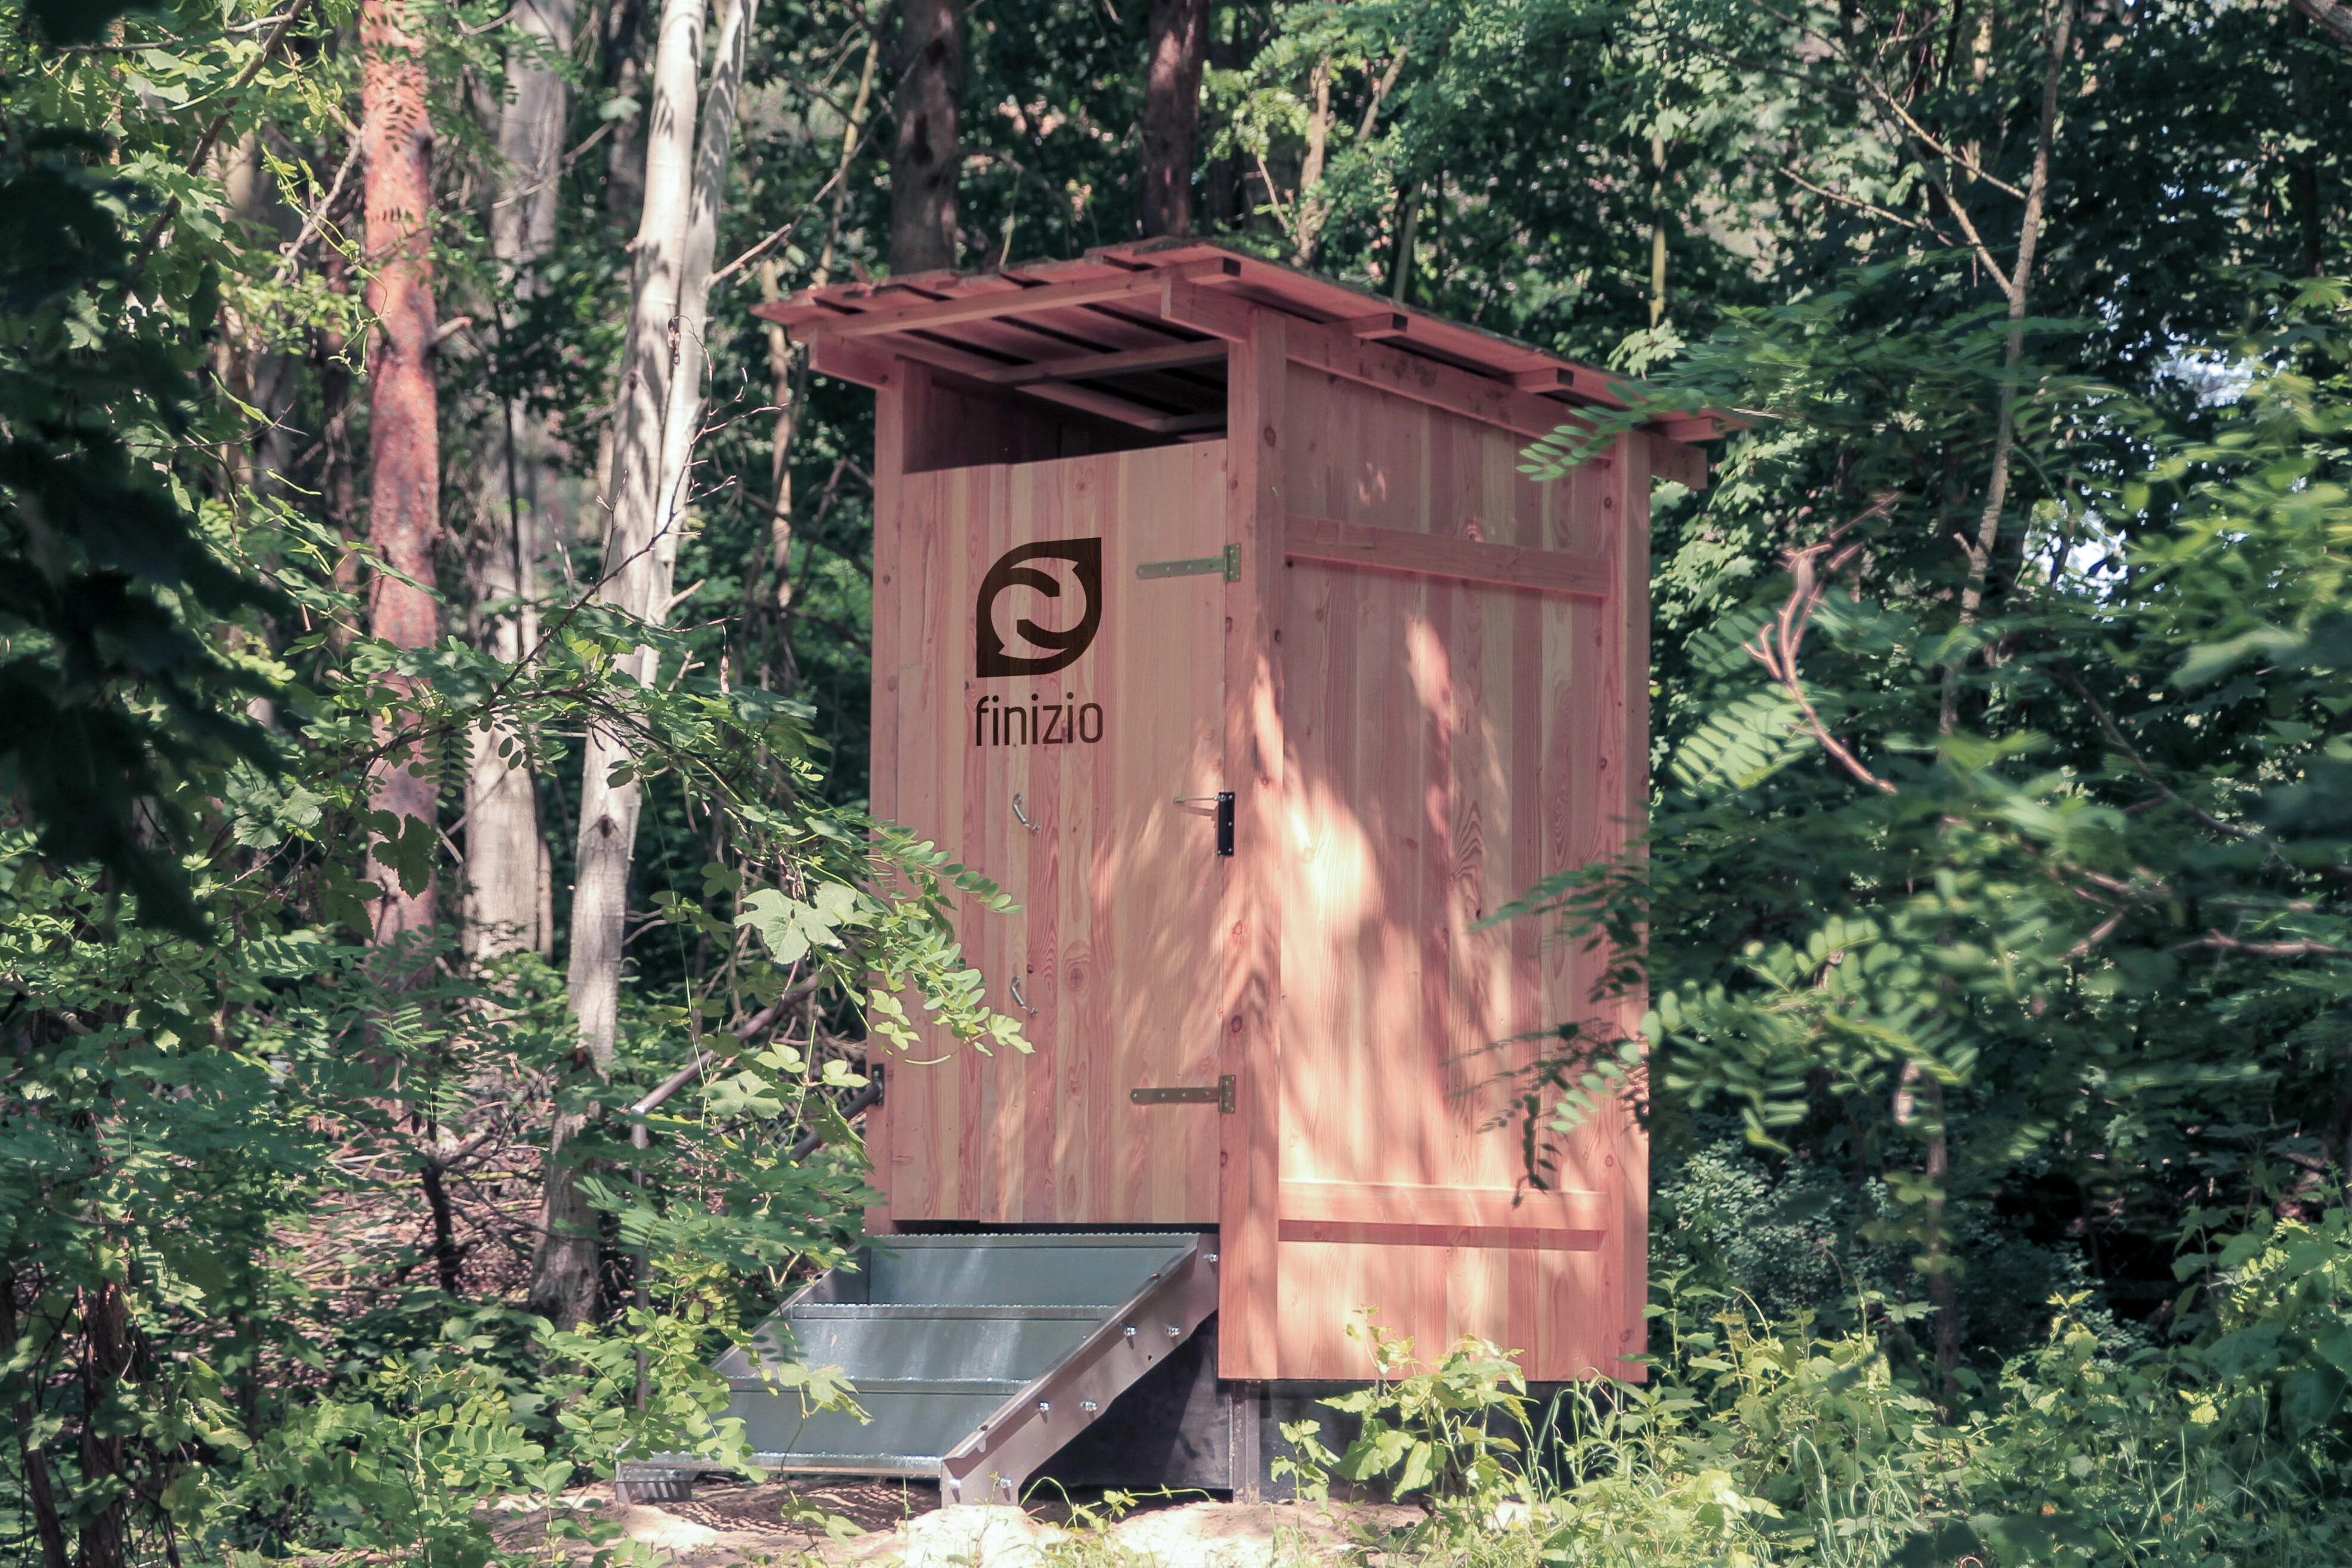 Trockentoiletten werden auf Festivals, beim Camping oder als City-Toiletten immer beliebter.